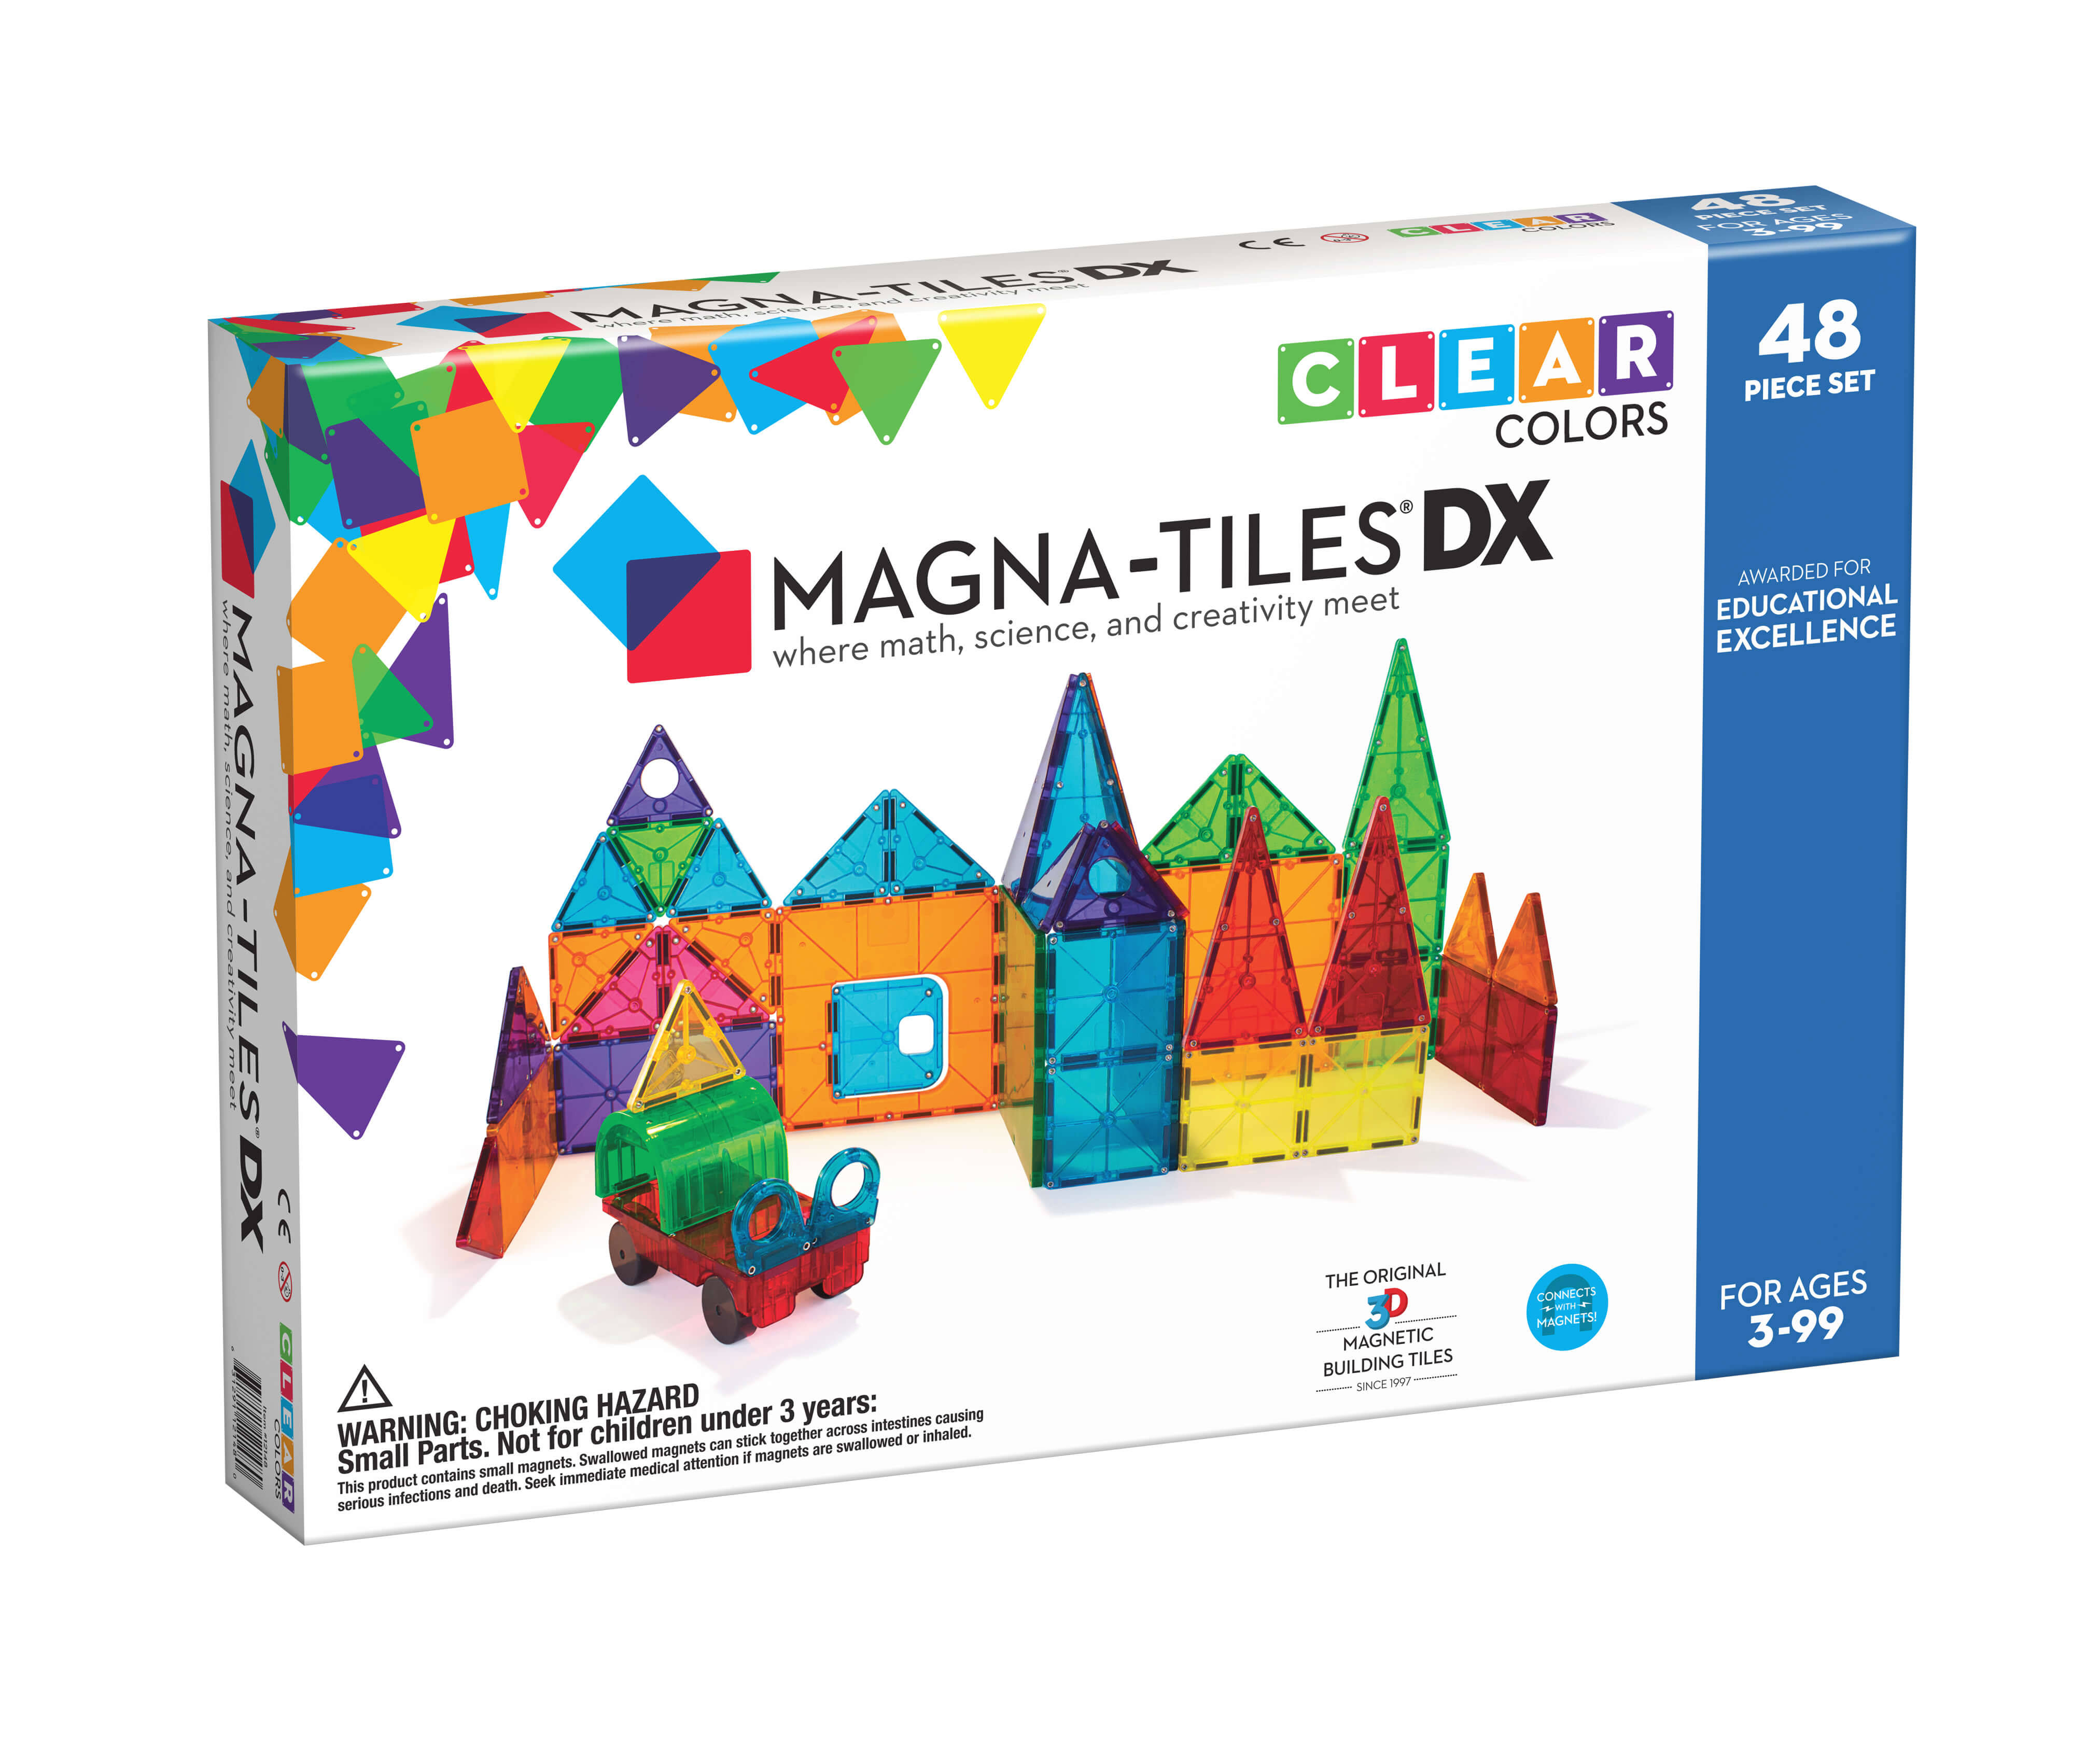 Magna Tiles Clear Colors 48 Piece Set